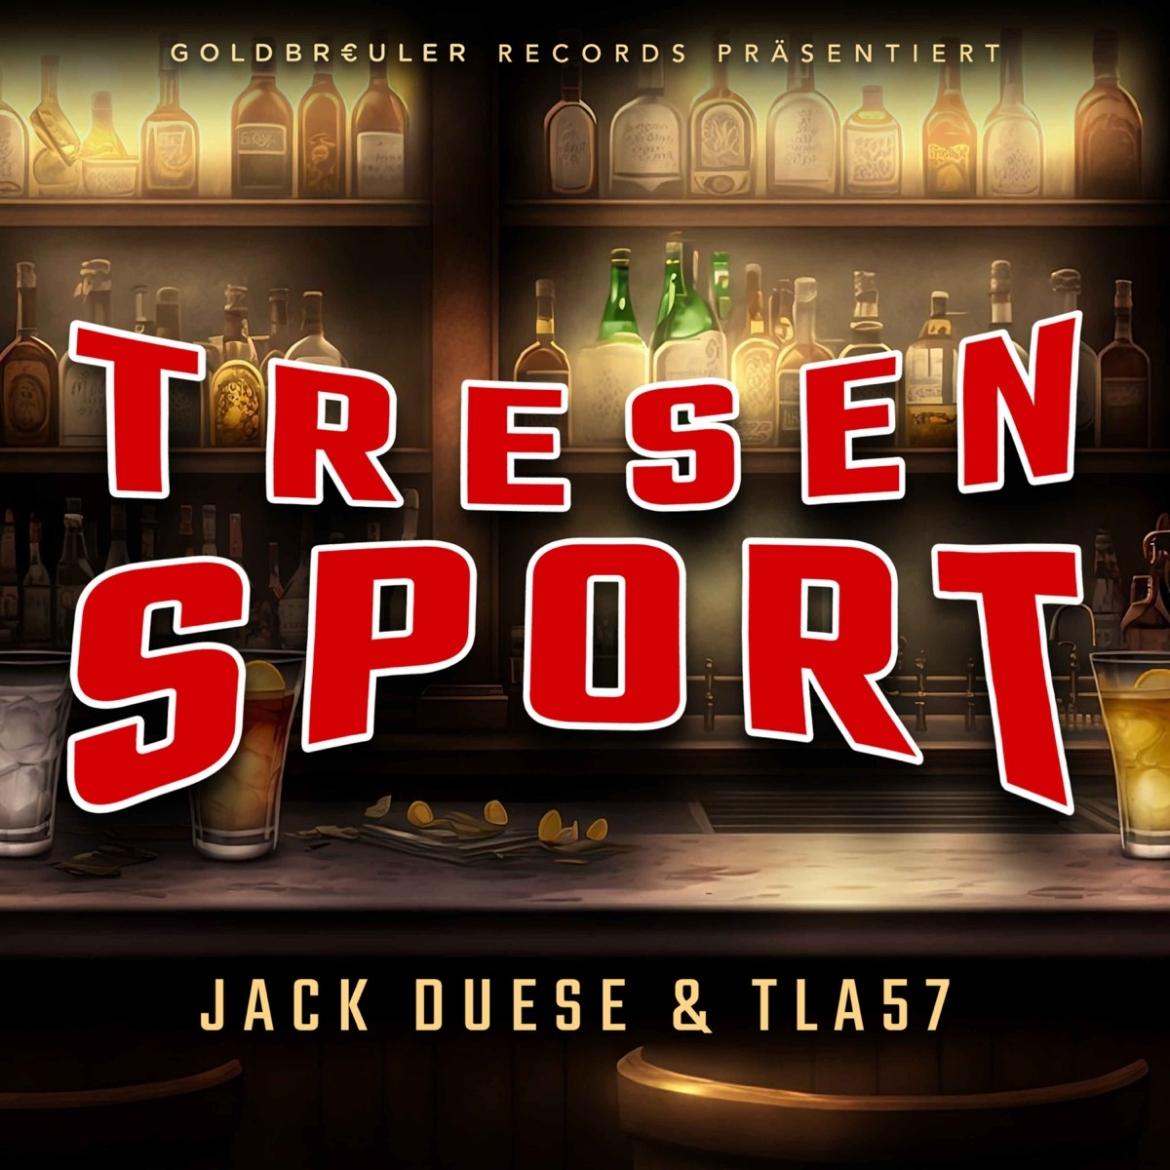 Cover zur EP "Tresensport" von Jack Duese und TLA57